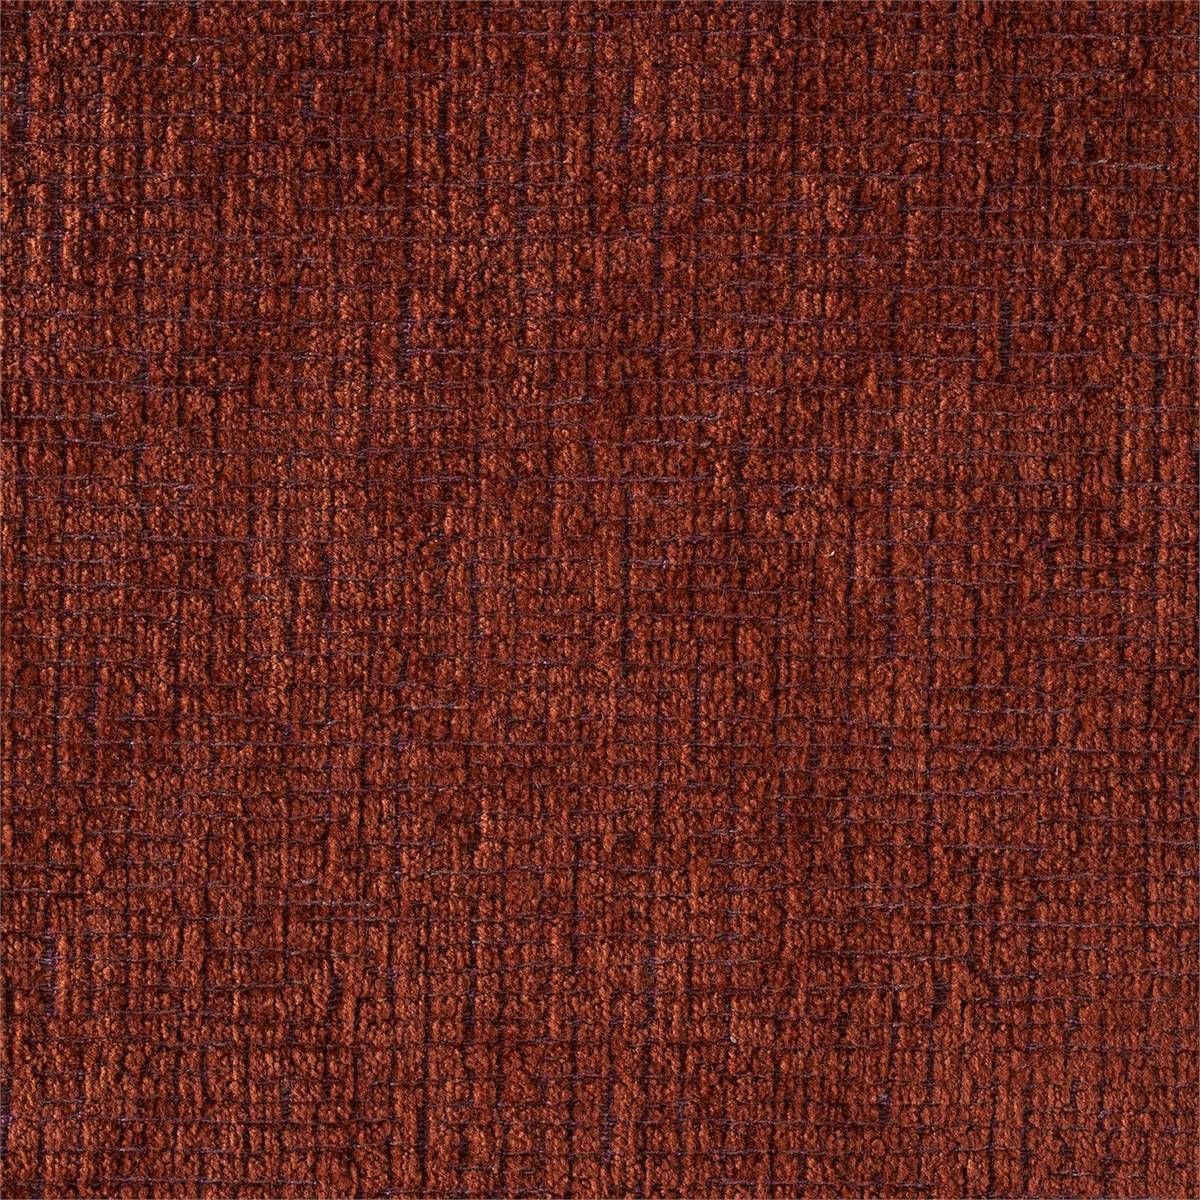 Tessella Copper Fabric by Sanderson